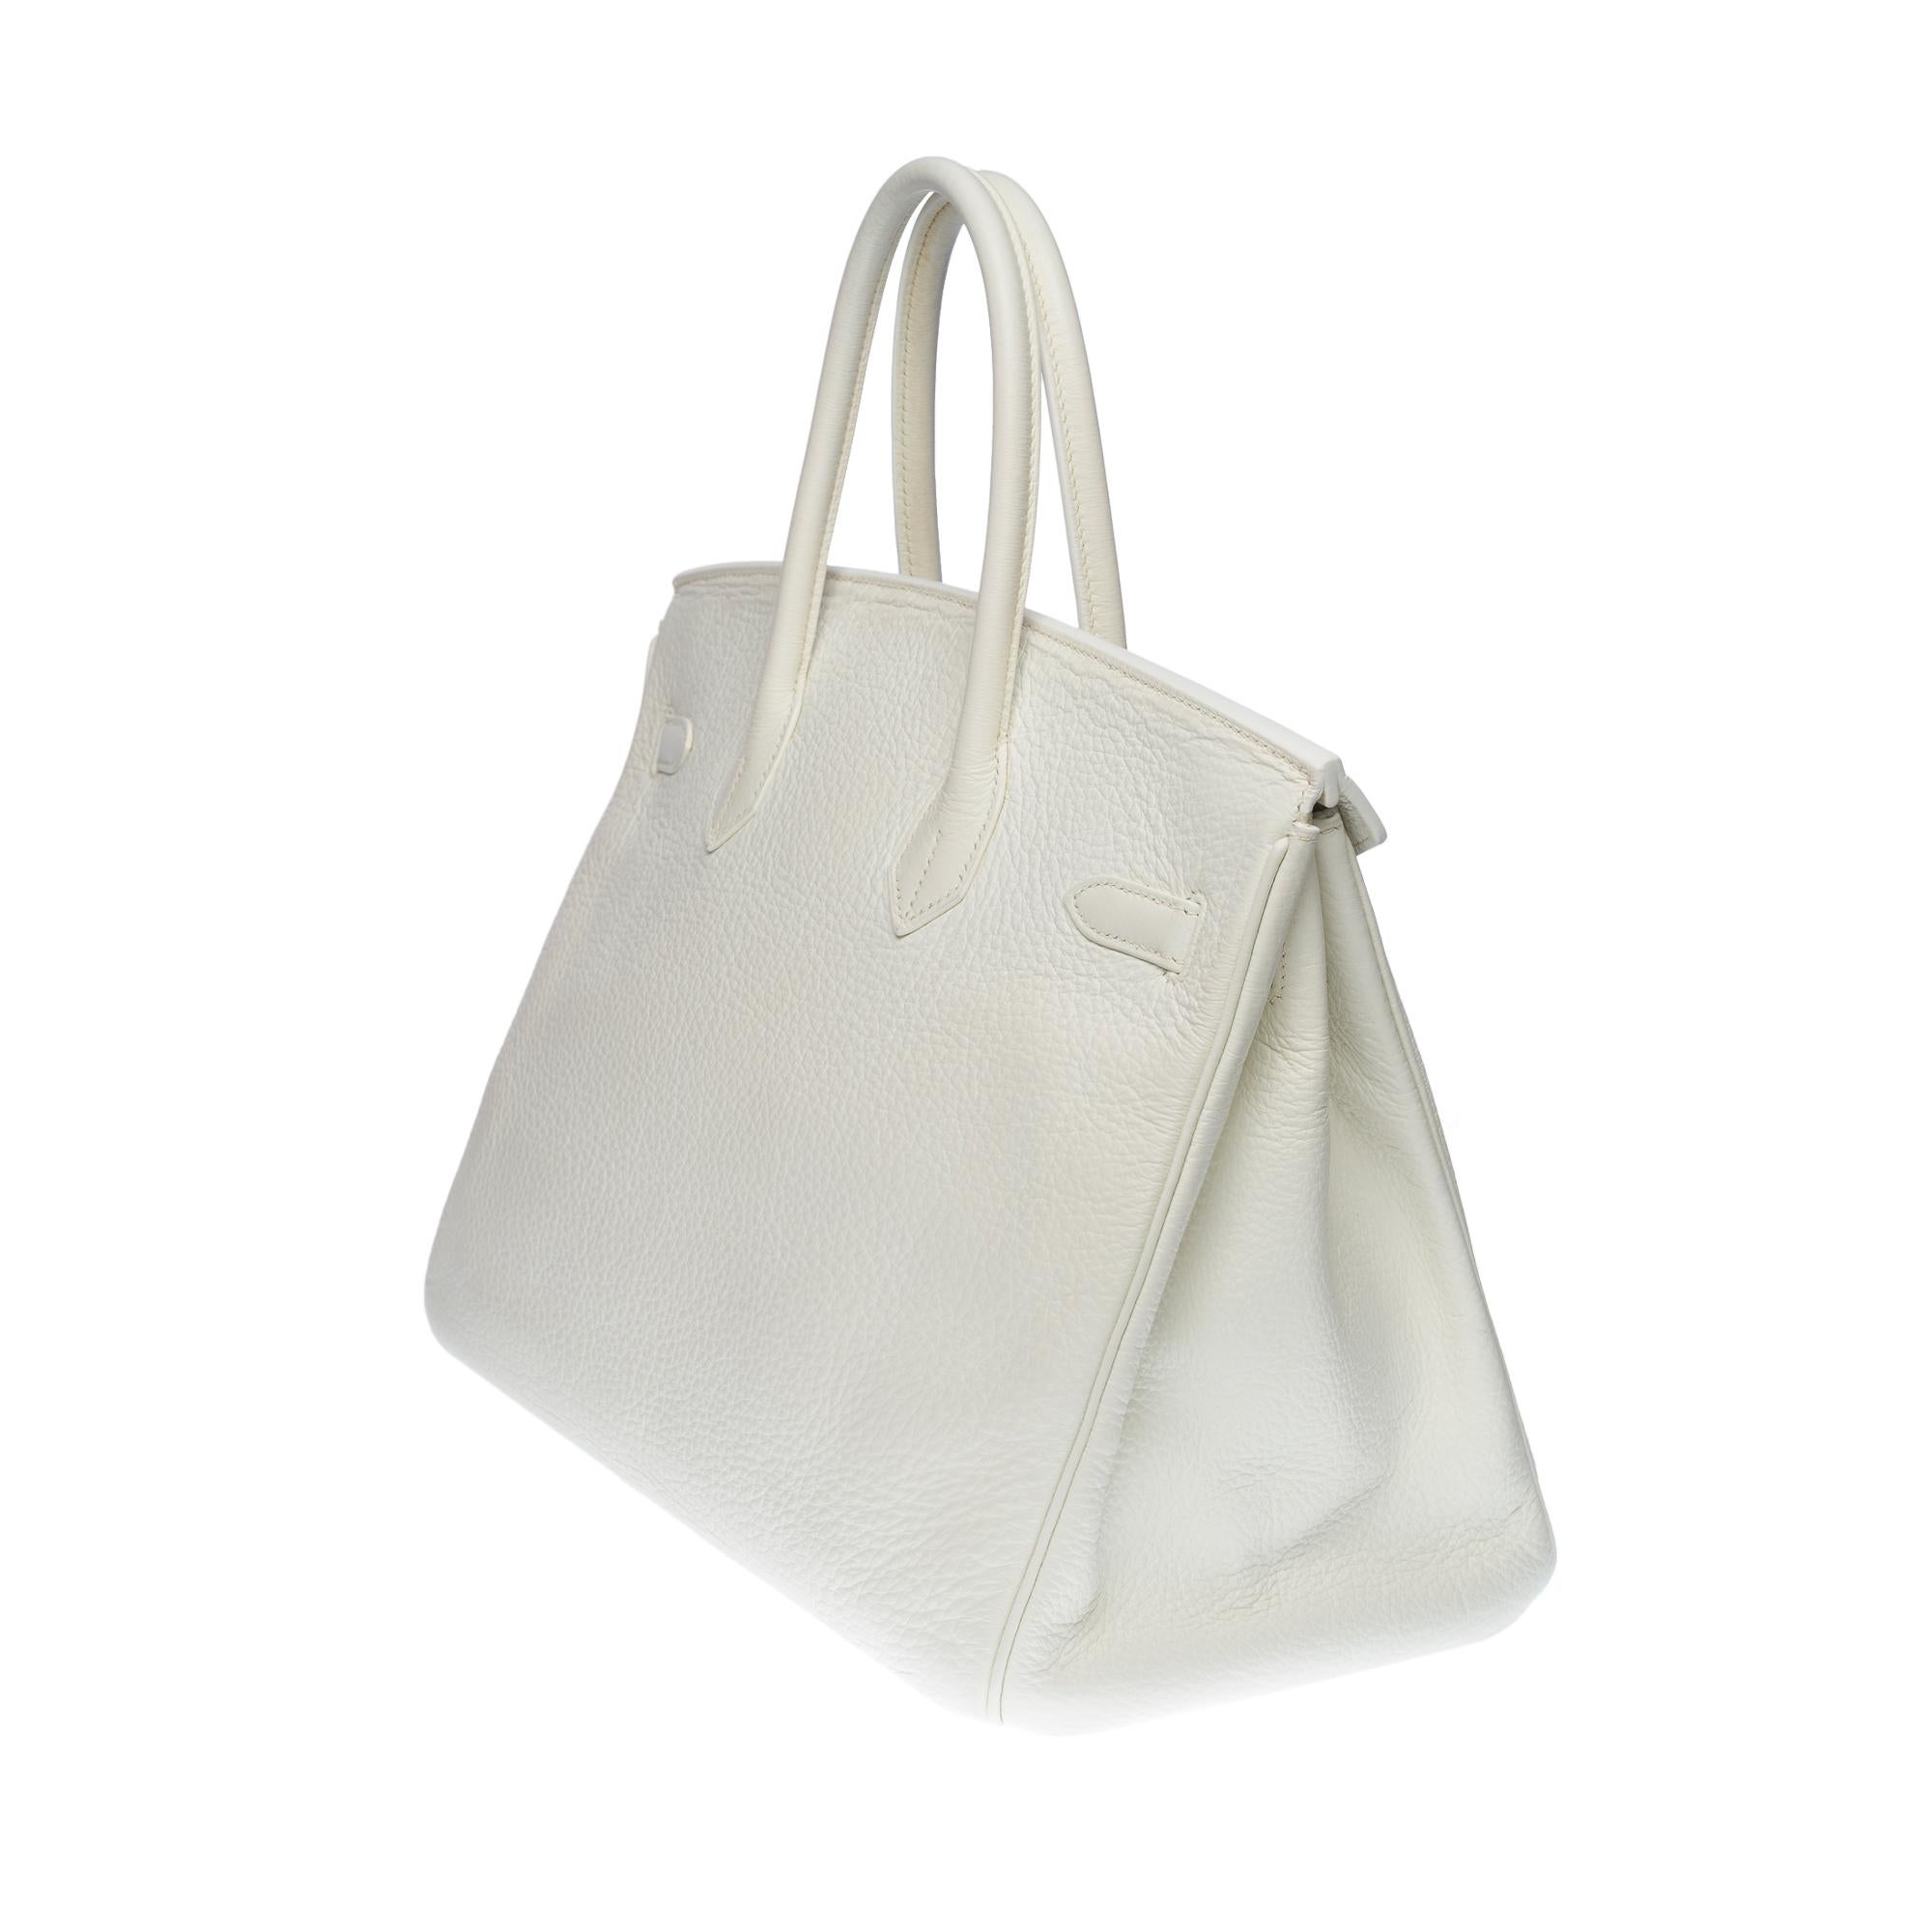 Stunning Hermès Birkin 35 handbag in white Togo leather, SHW 1